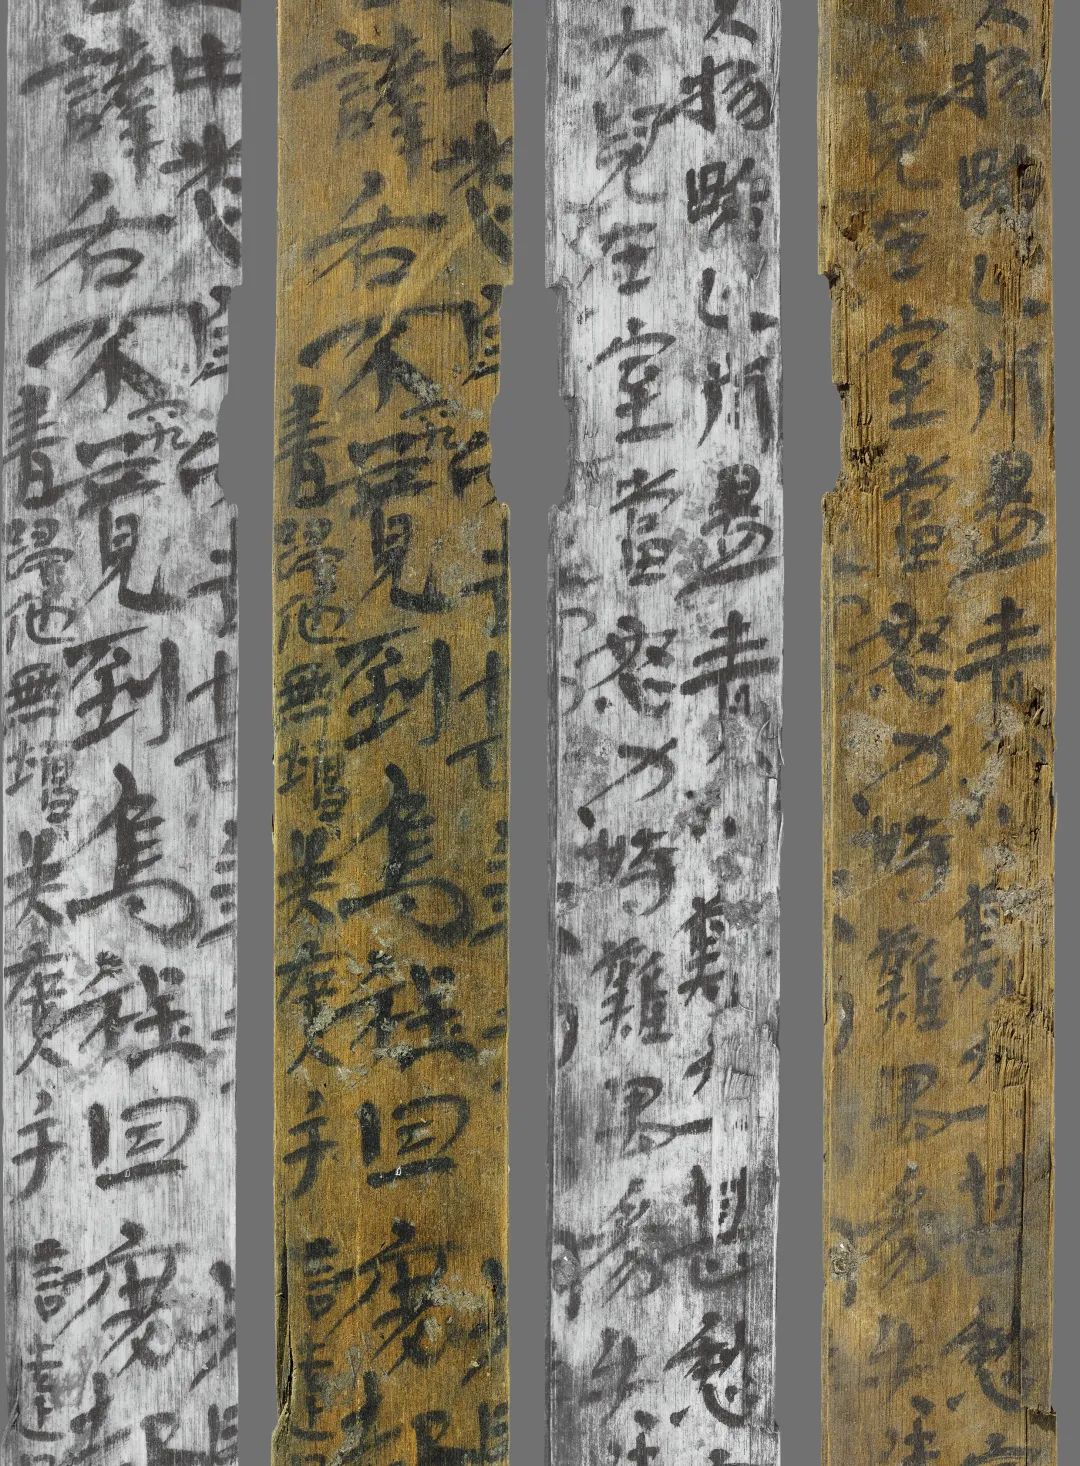 Naskah Kuno di Potongan Bambu Diteliti-Image-5